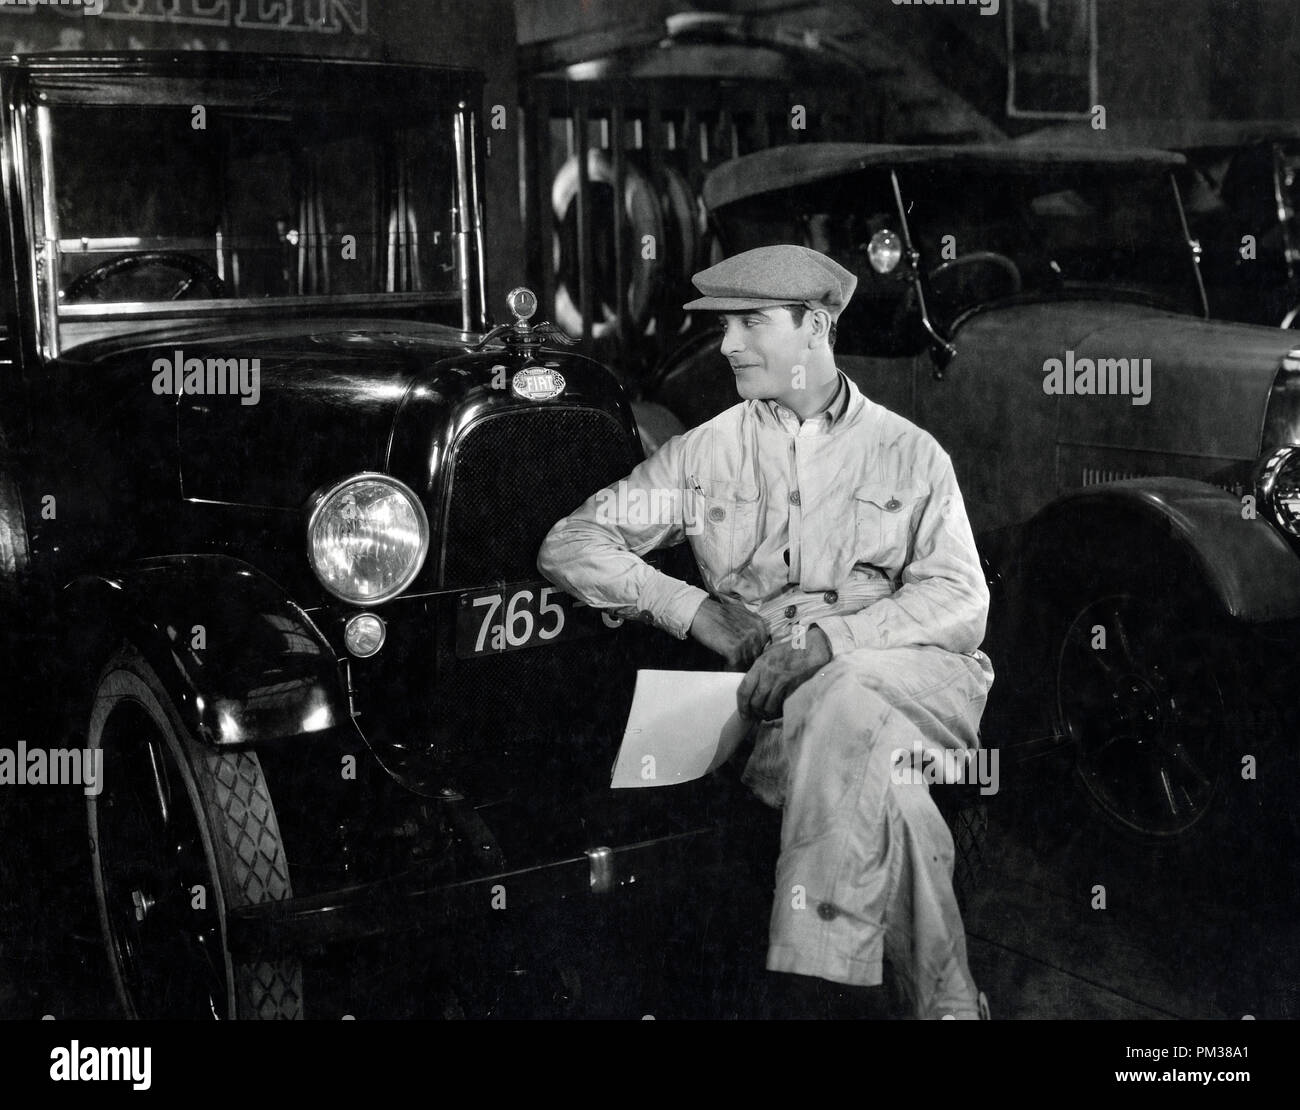 Stummfilm Szene immer noch. Ein Automechaniker in Latzhosen, ruht auf der Stoßstange eines Fahrzeugs aus den 1920er Jahren, ca. 1930. Datei Referenz Nr. 1183 014 THA Stockfoto